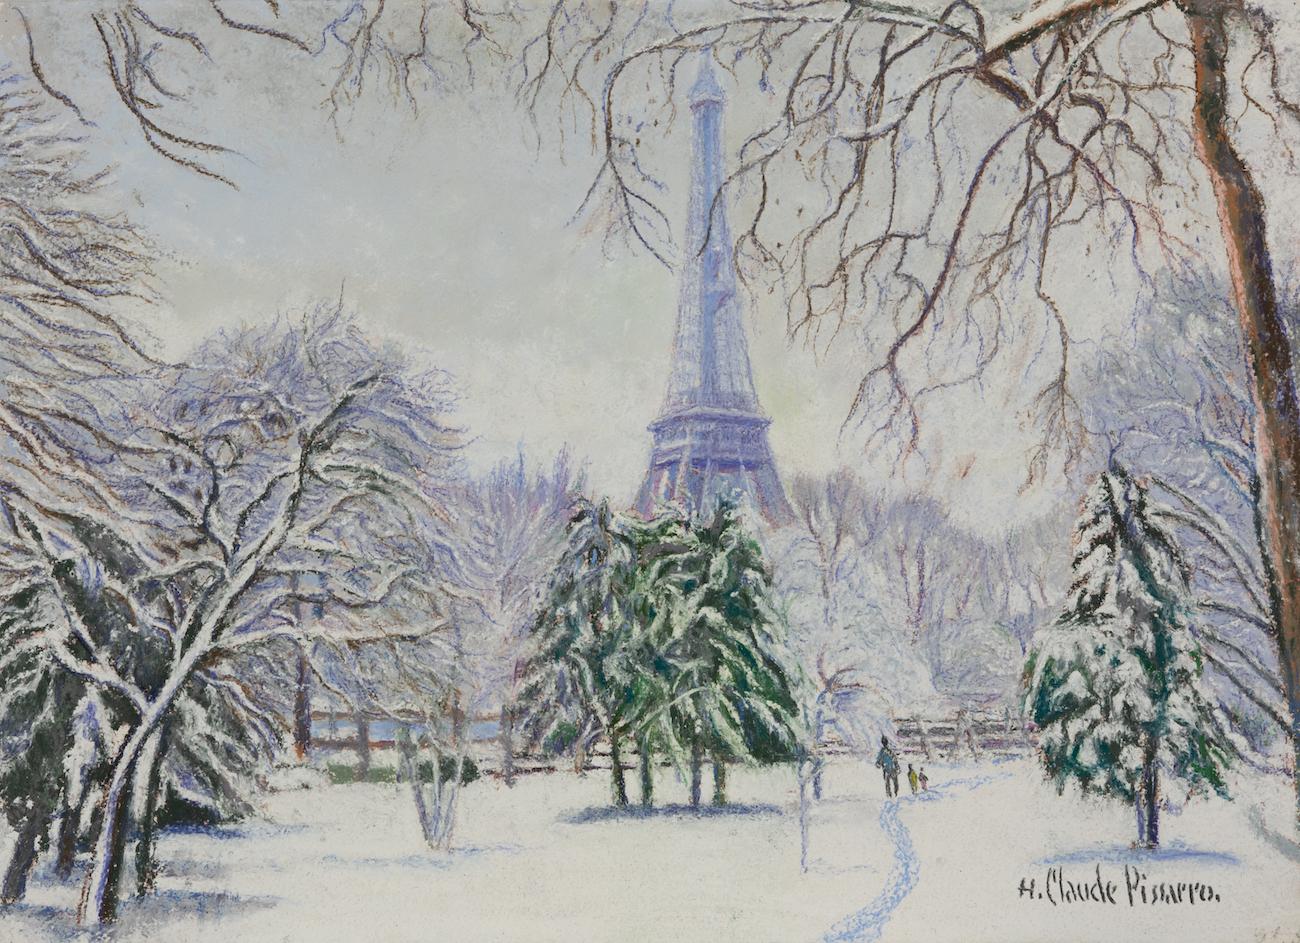 Neige Paris par H. Claude Pissarro - Scène de neige de Paris